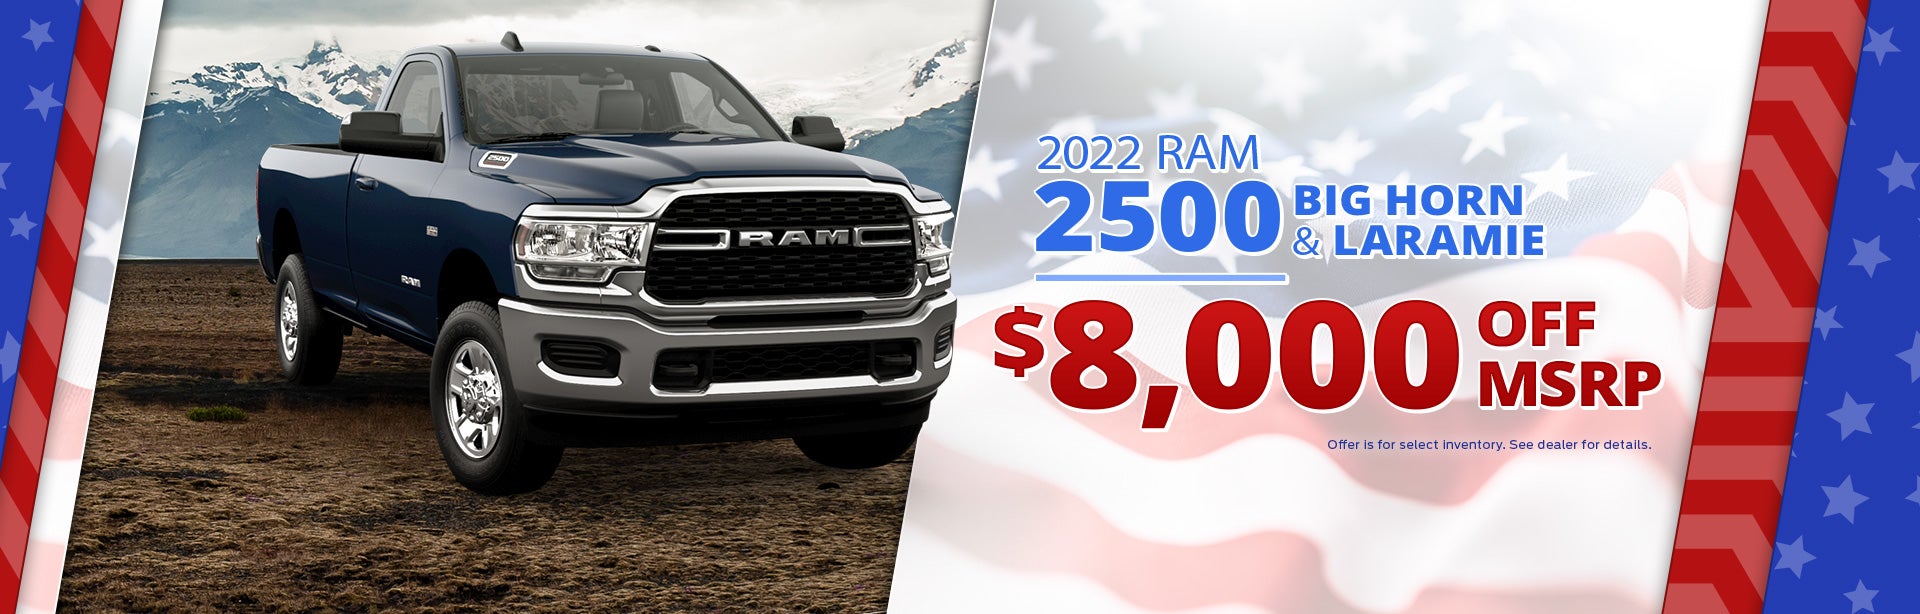 2022 Ram 2500 Big Horn & Laramie